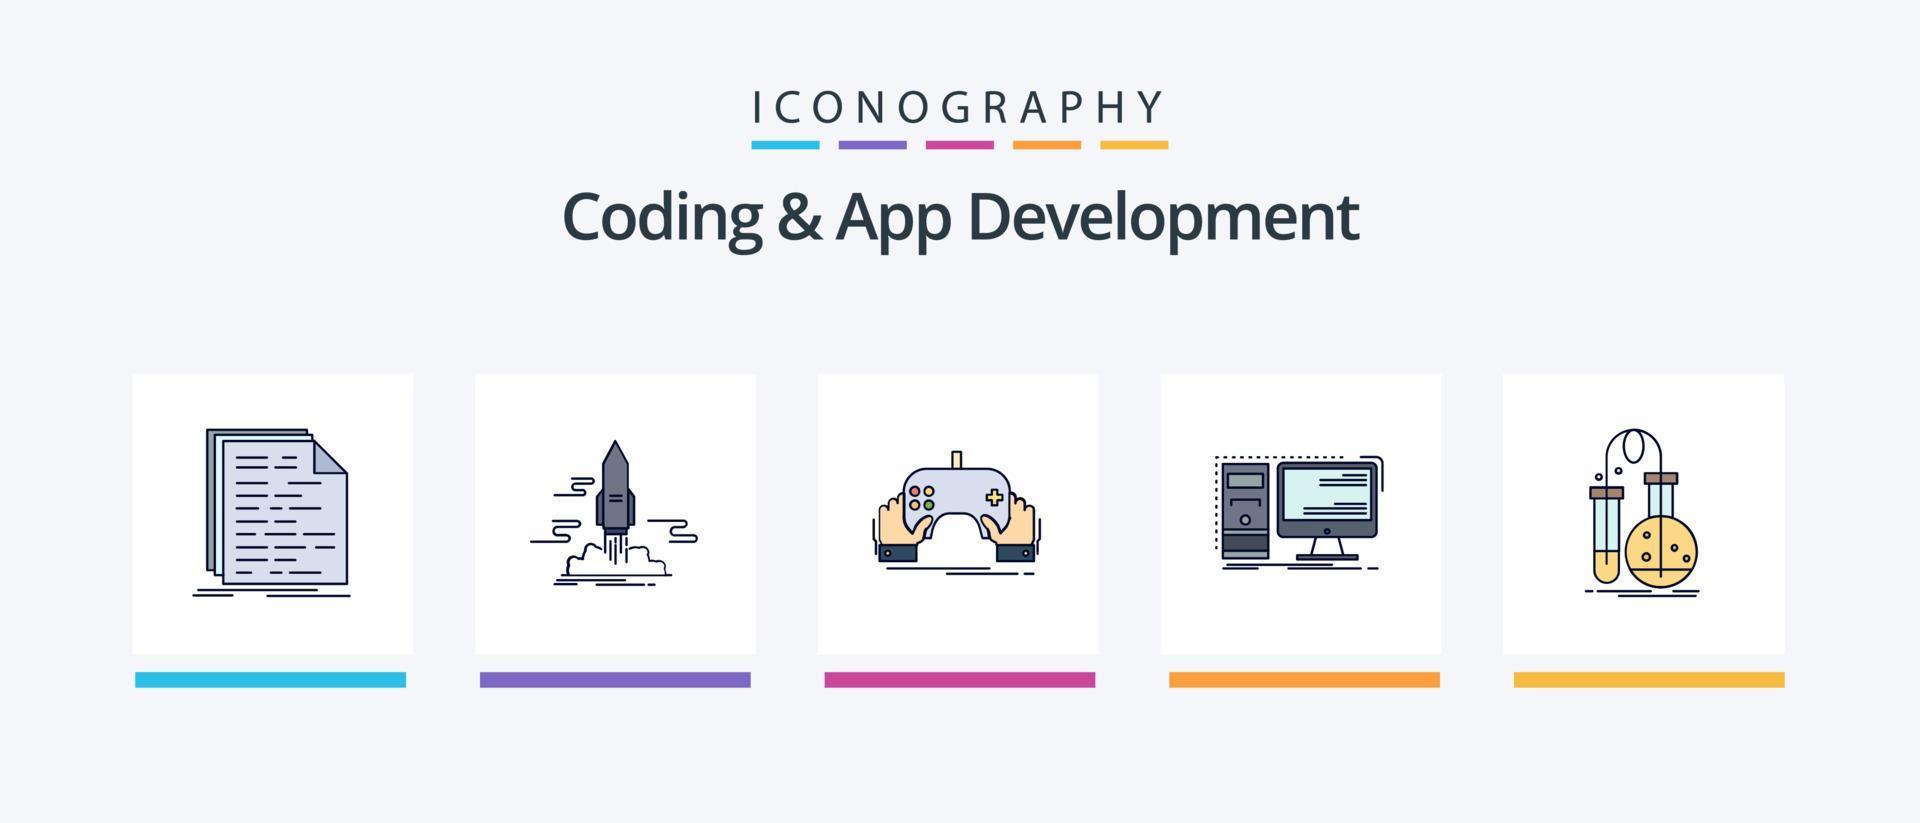 ligne de codage et de développement d'applications remplie de 5 icônes, y compris l'application. certificat. l'Internet. conception. utilisateur. conception d'icônes créatives vecteur